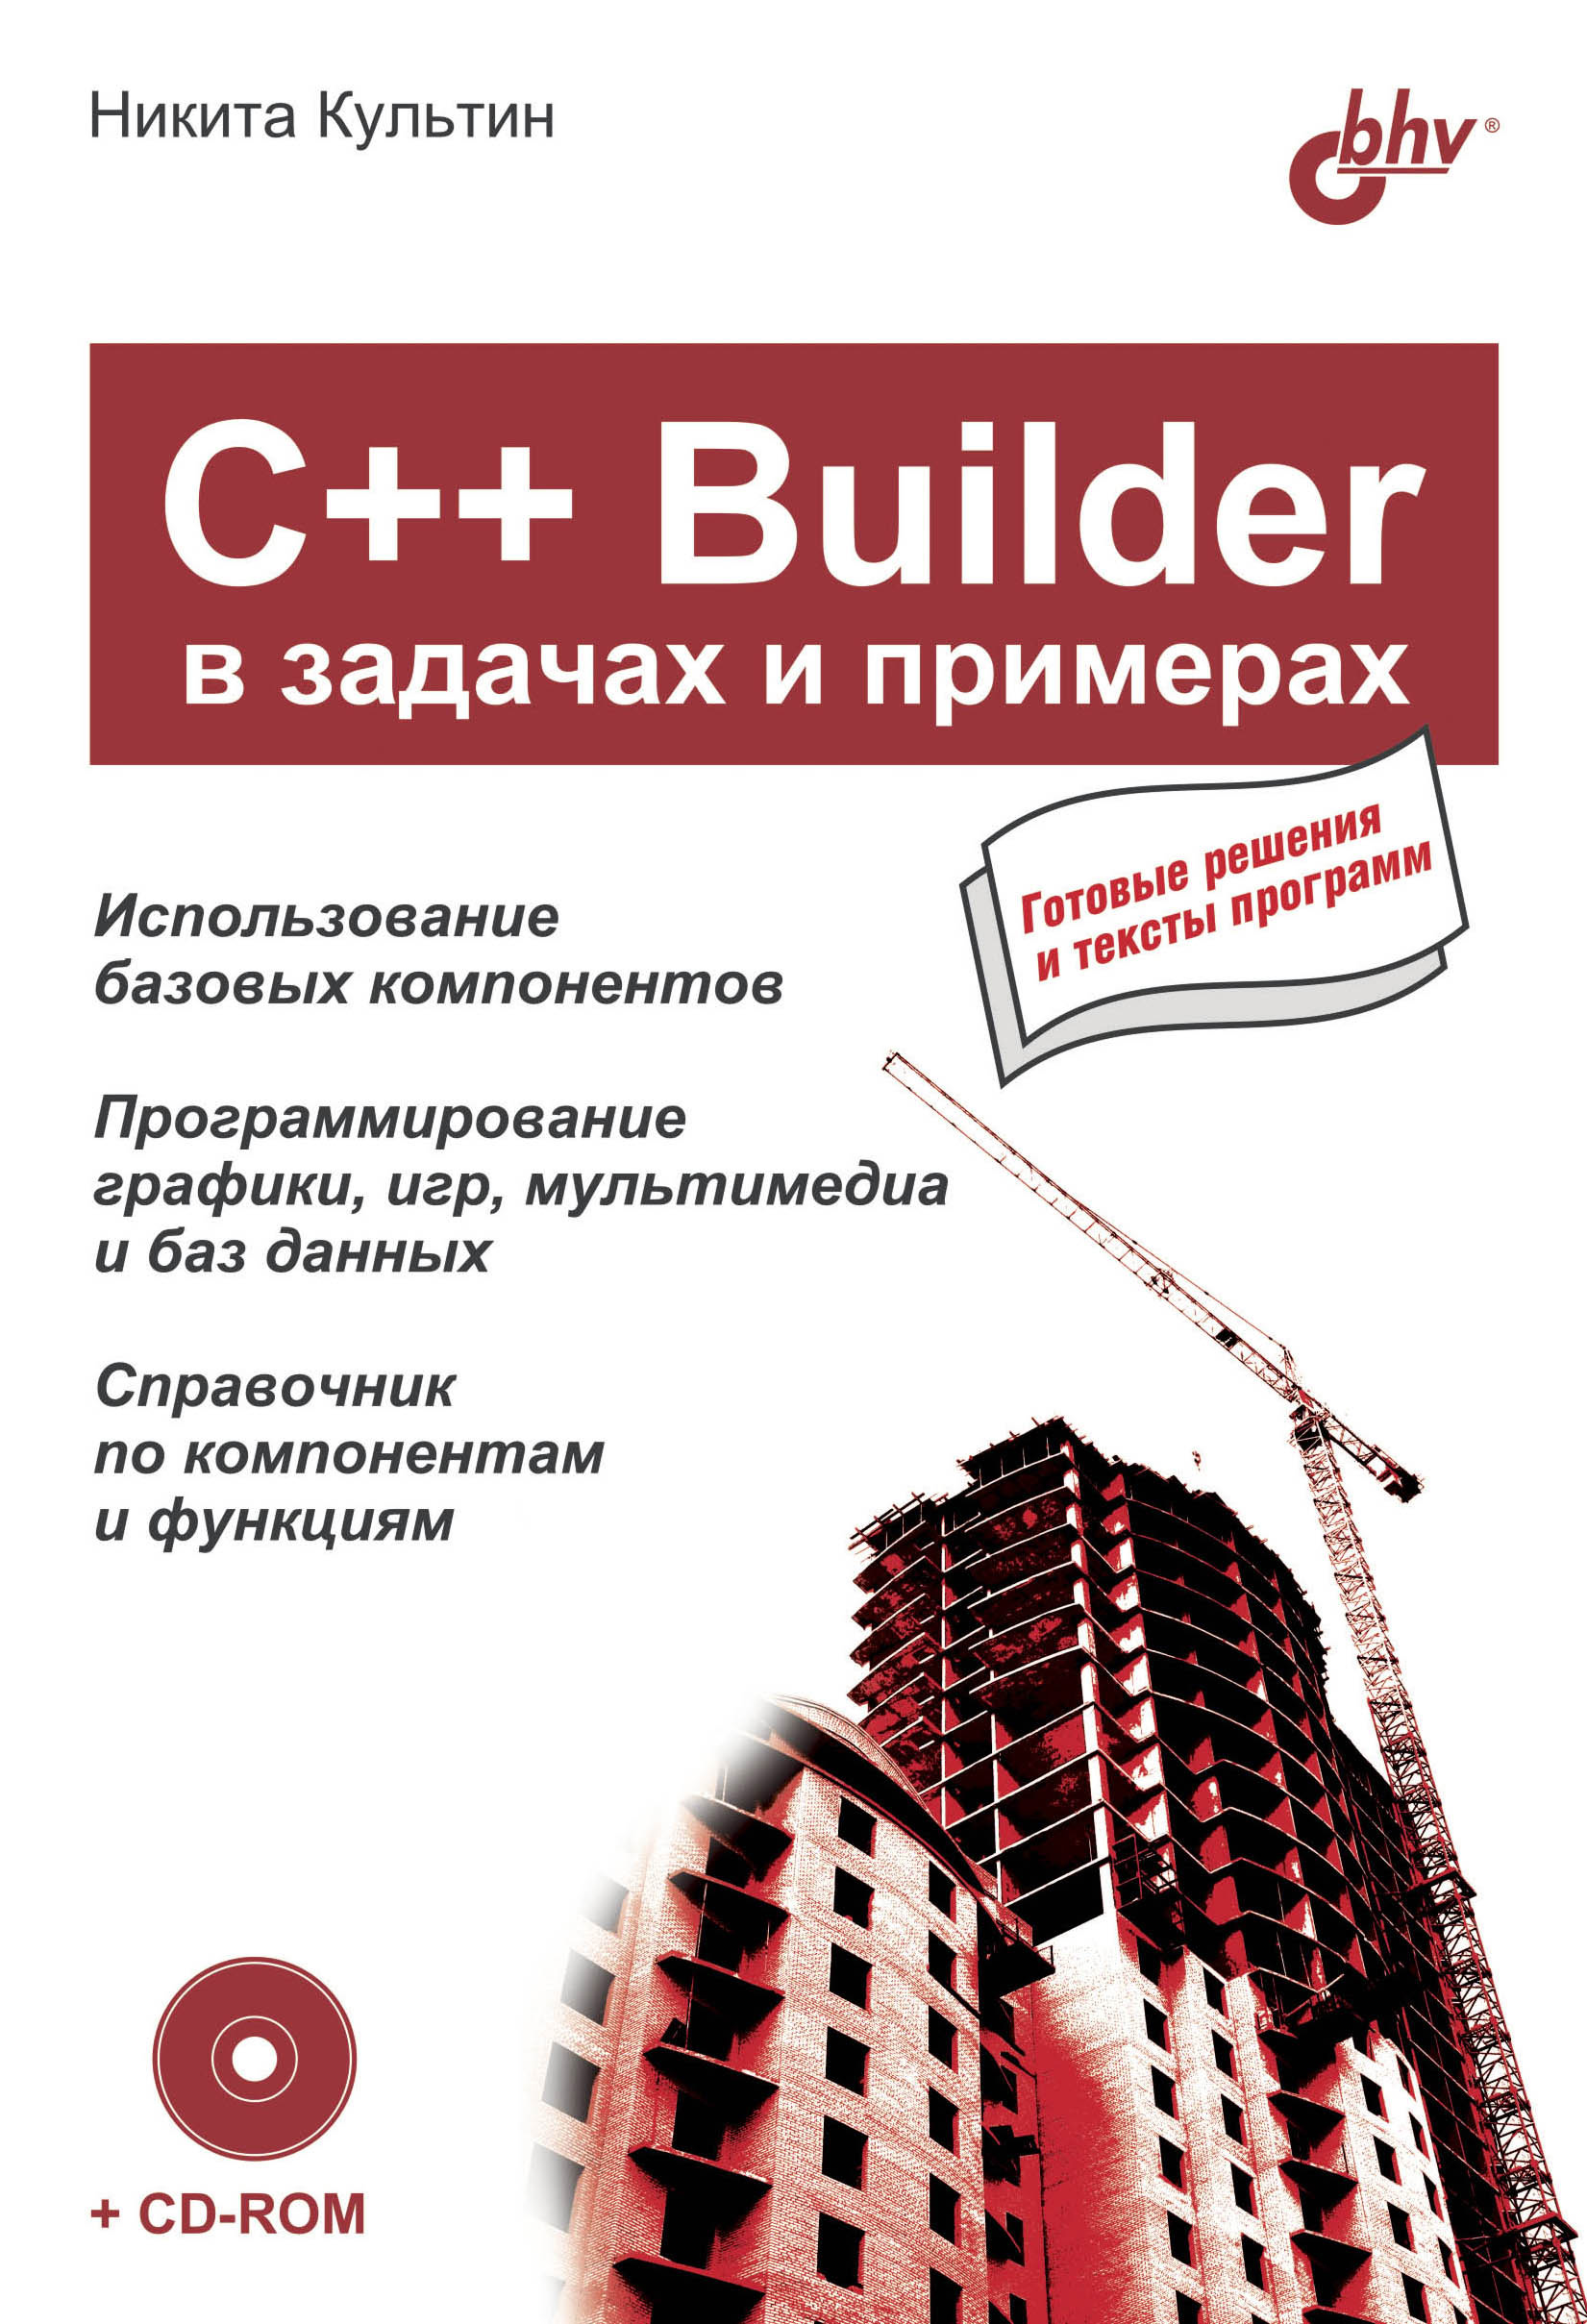 Книга В задачах и примерах C++ Builder в задачах и примерах созданная Никита Культин может относится к жанру программирование. Стоимость электронной книги C++ Builder в задачах и примерах с идентификатором 6654078 составляет 119.00 руб.